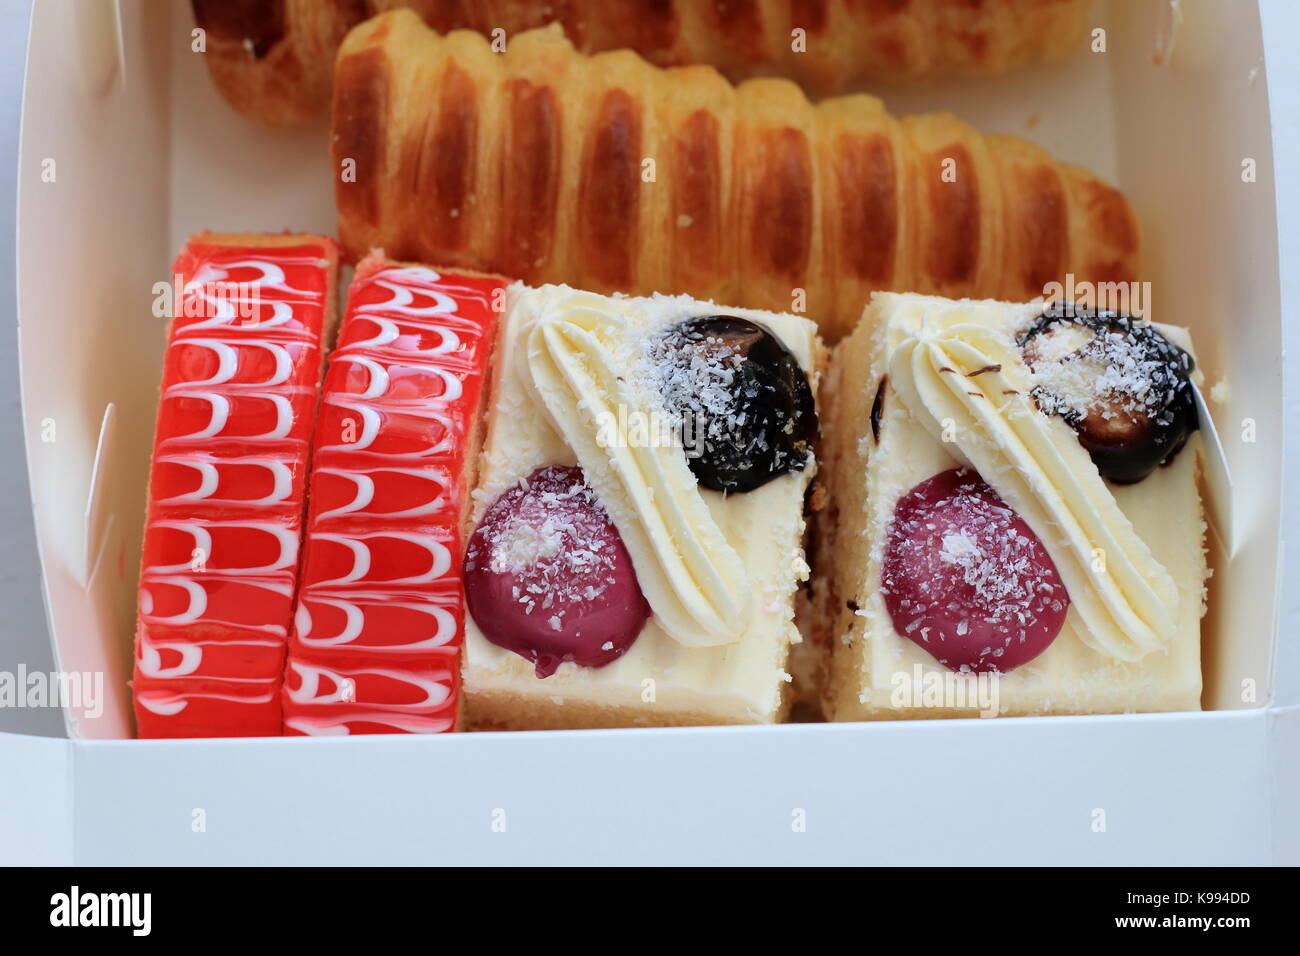 Una caja de variedades mixtas de pasteles y postres. Foto de stock